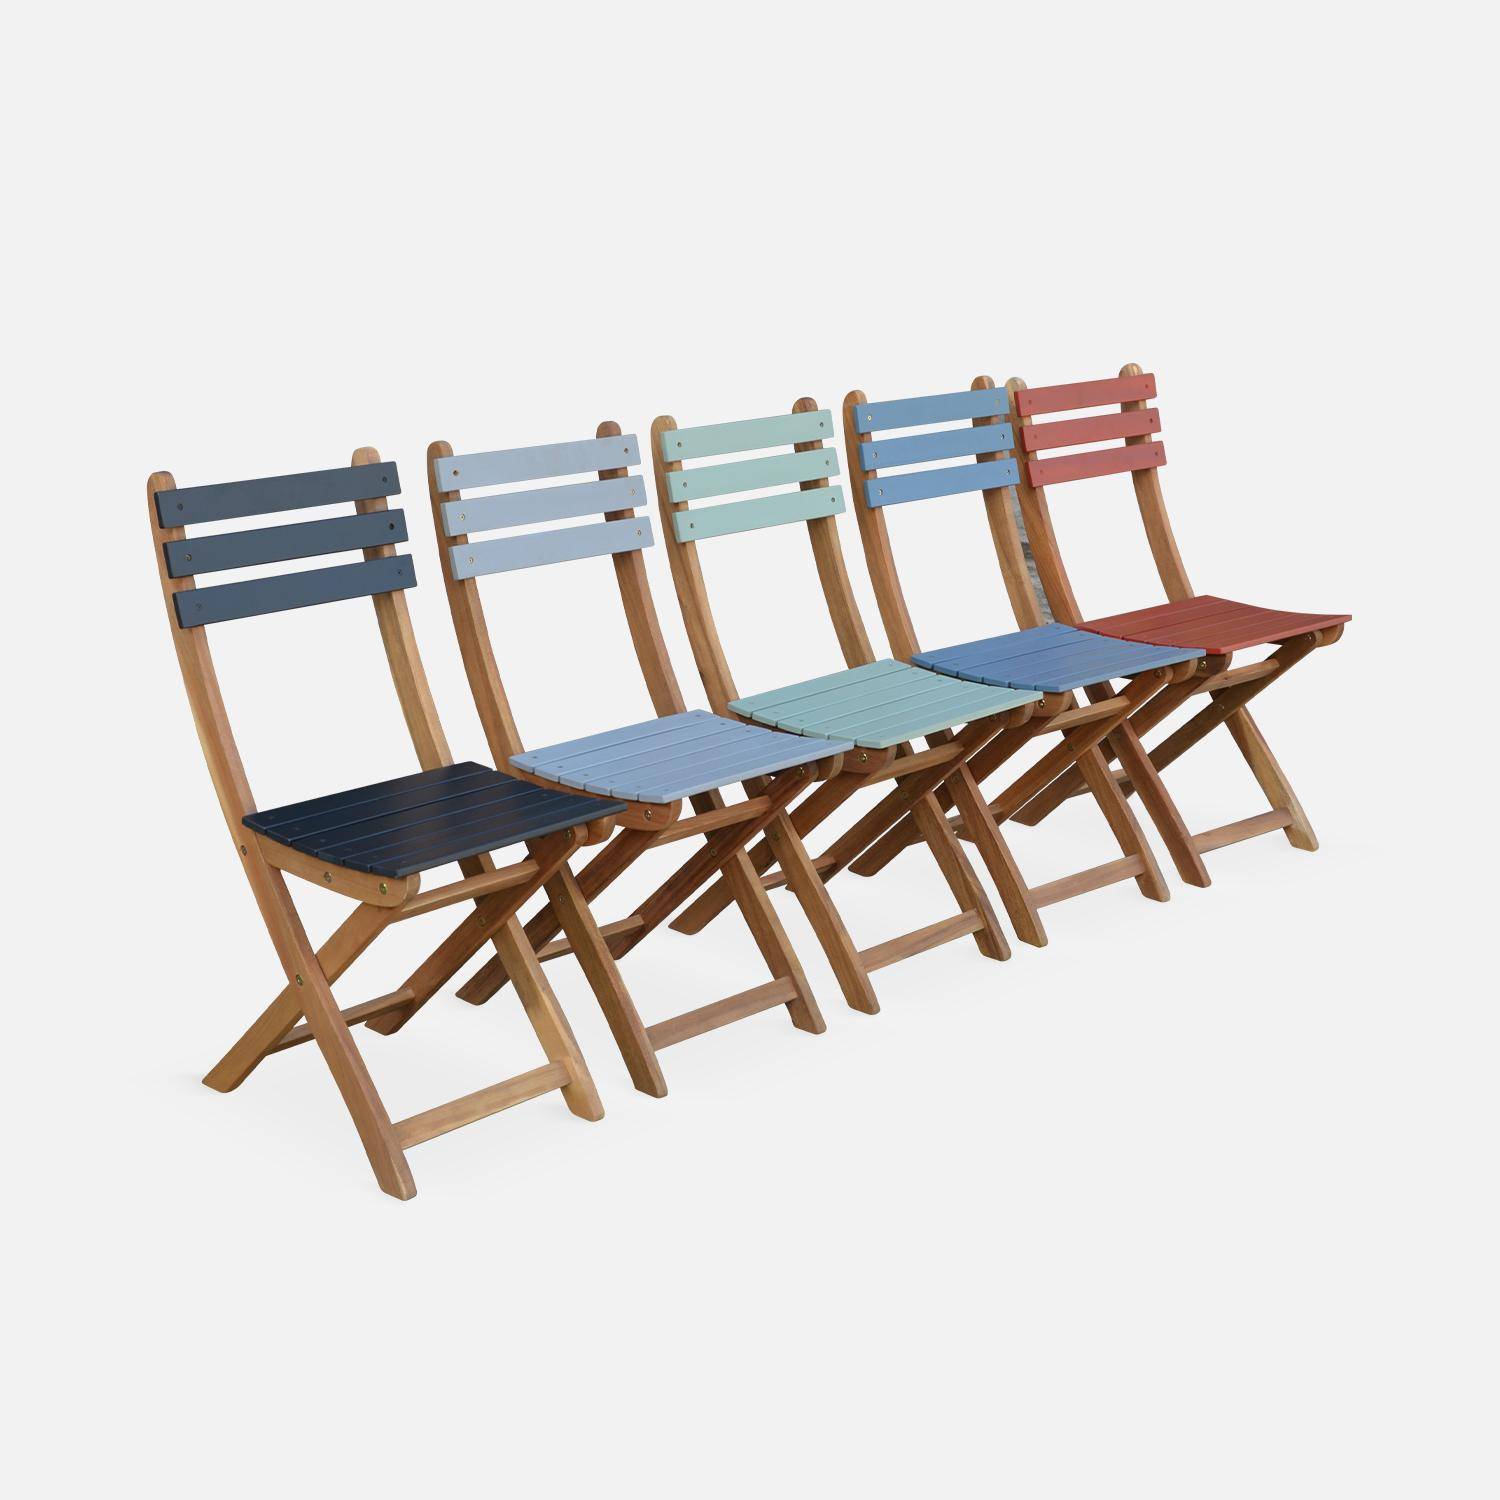 Conjunto de jardín de madera Bistro 60x60cm - Barcelona - verde grisáceo, mesa plegable bicolor con 2 sillas plegables, acacia Photo5